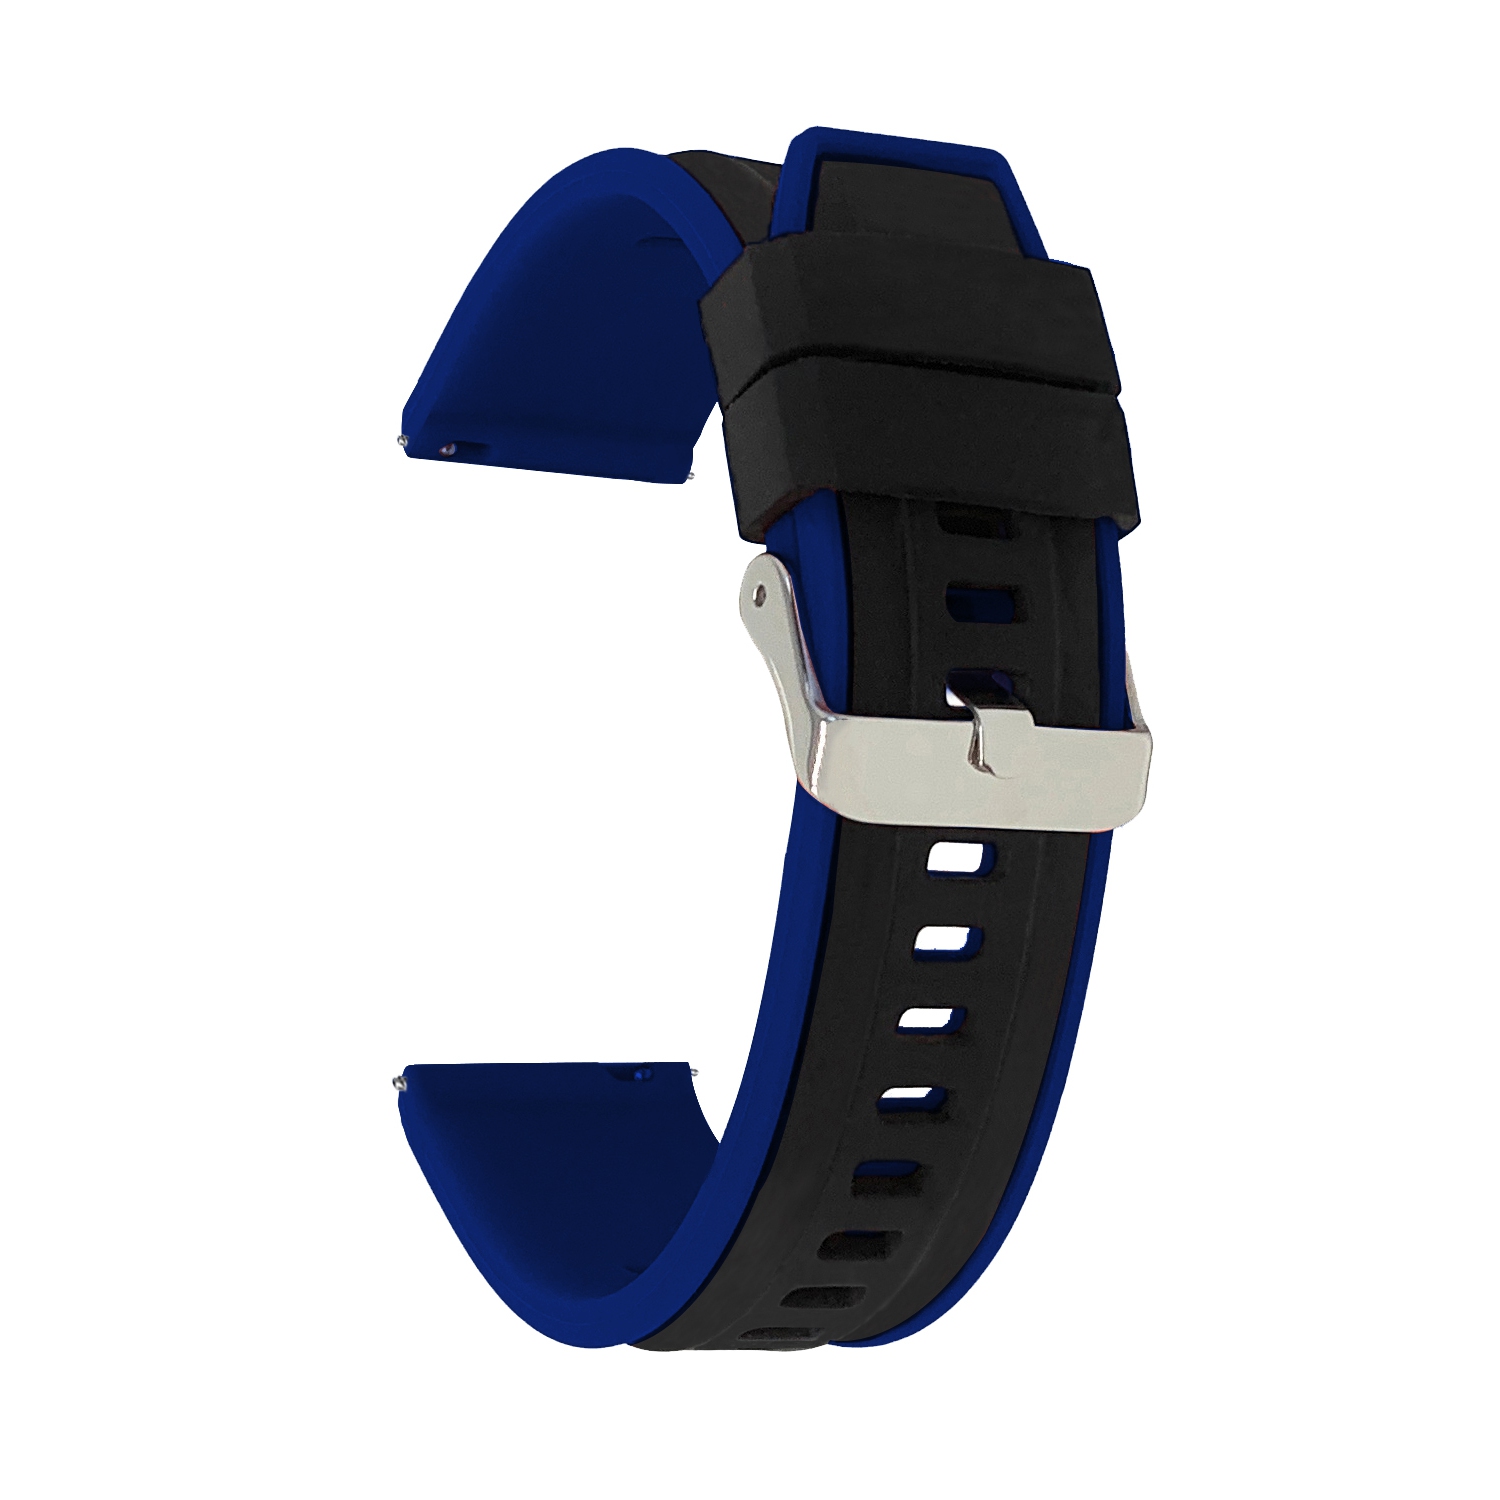 Bandini Quick Release Two-Tone Rubber Silicone Smart Watch Strap For Garmin Venu Sq - 20mm, Black / Blue / Silver Buckle